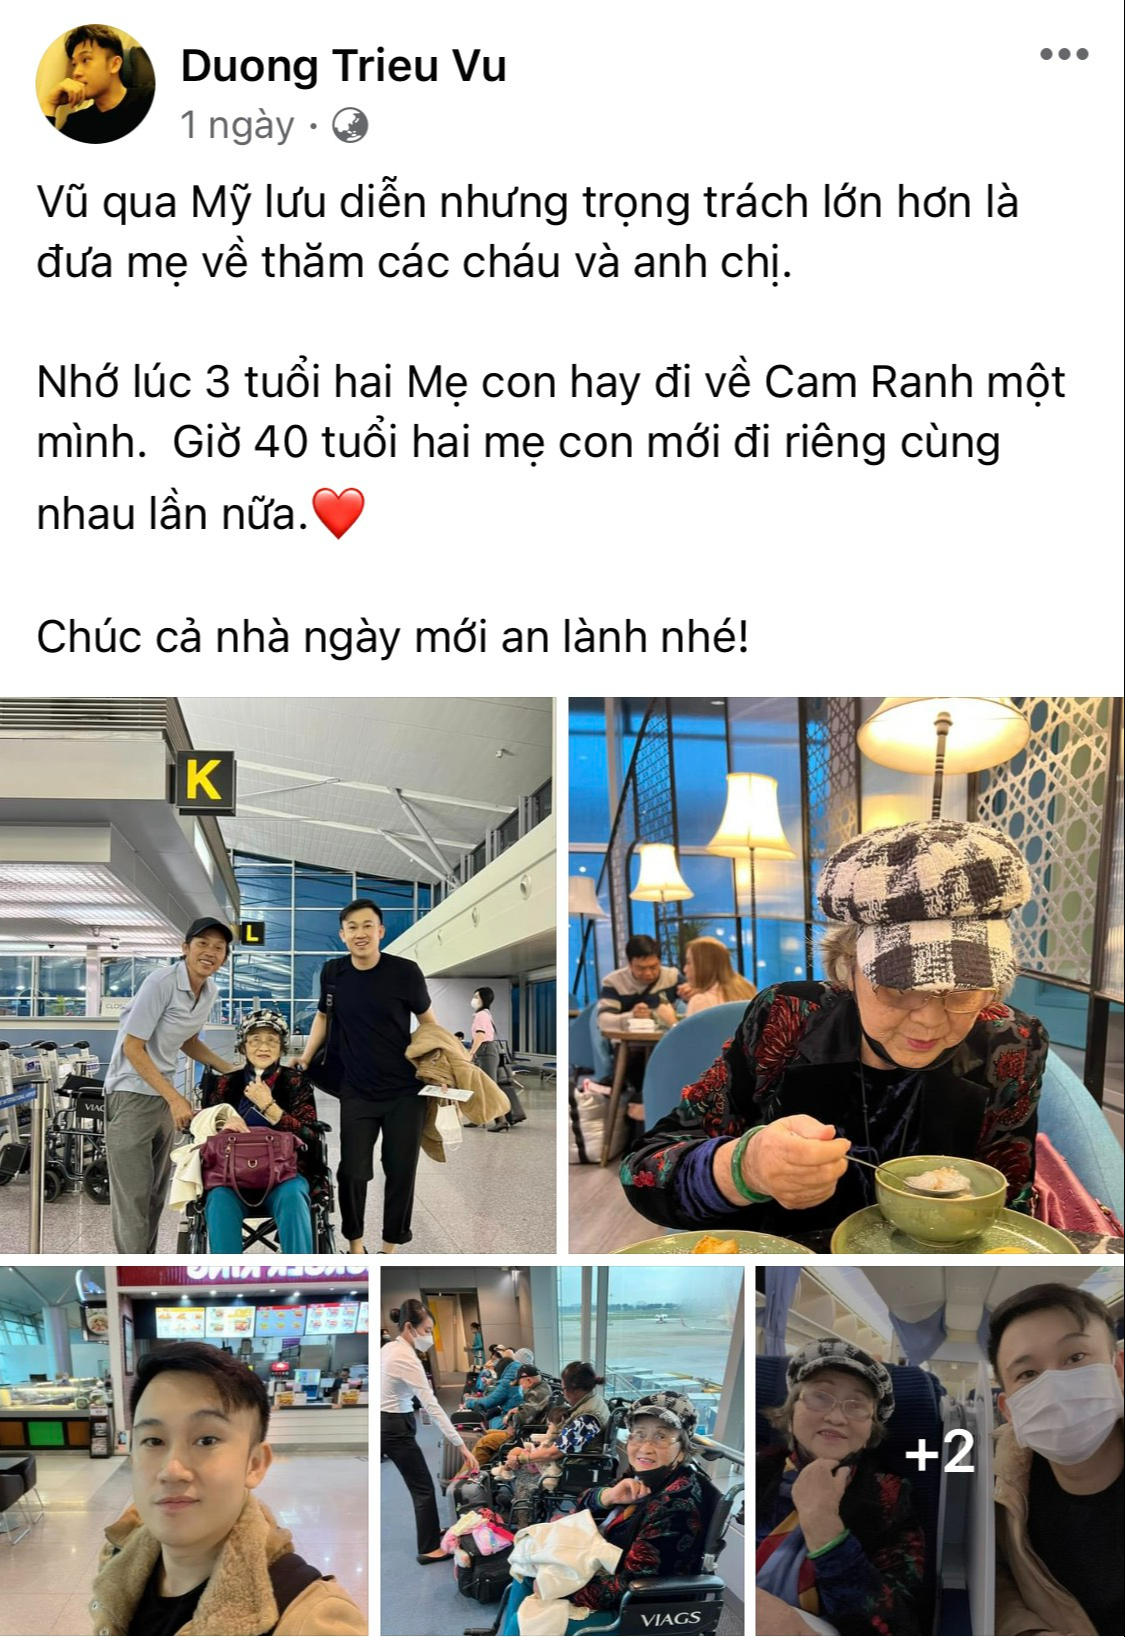 Hoài Linh xuất hiện tại sân bay với hình ảnh gầy rộc, hom hem khó nhận ra - Ảnh 1.